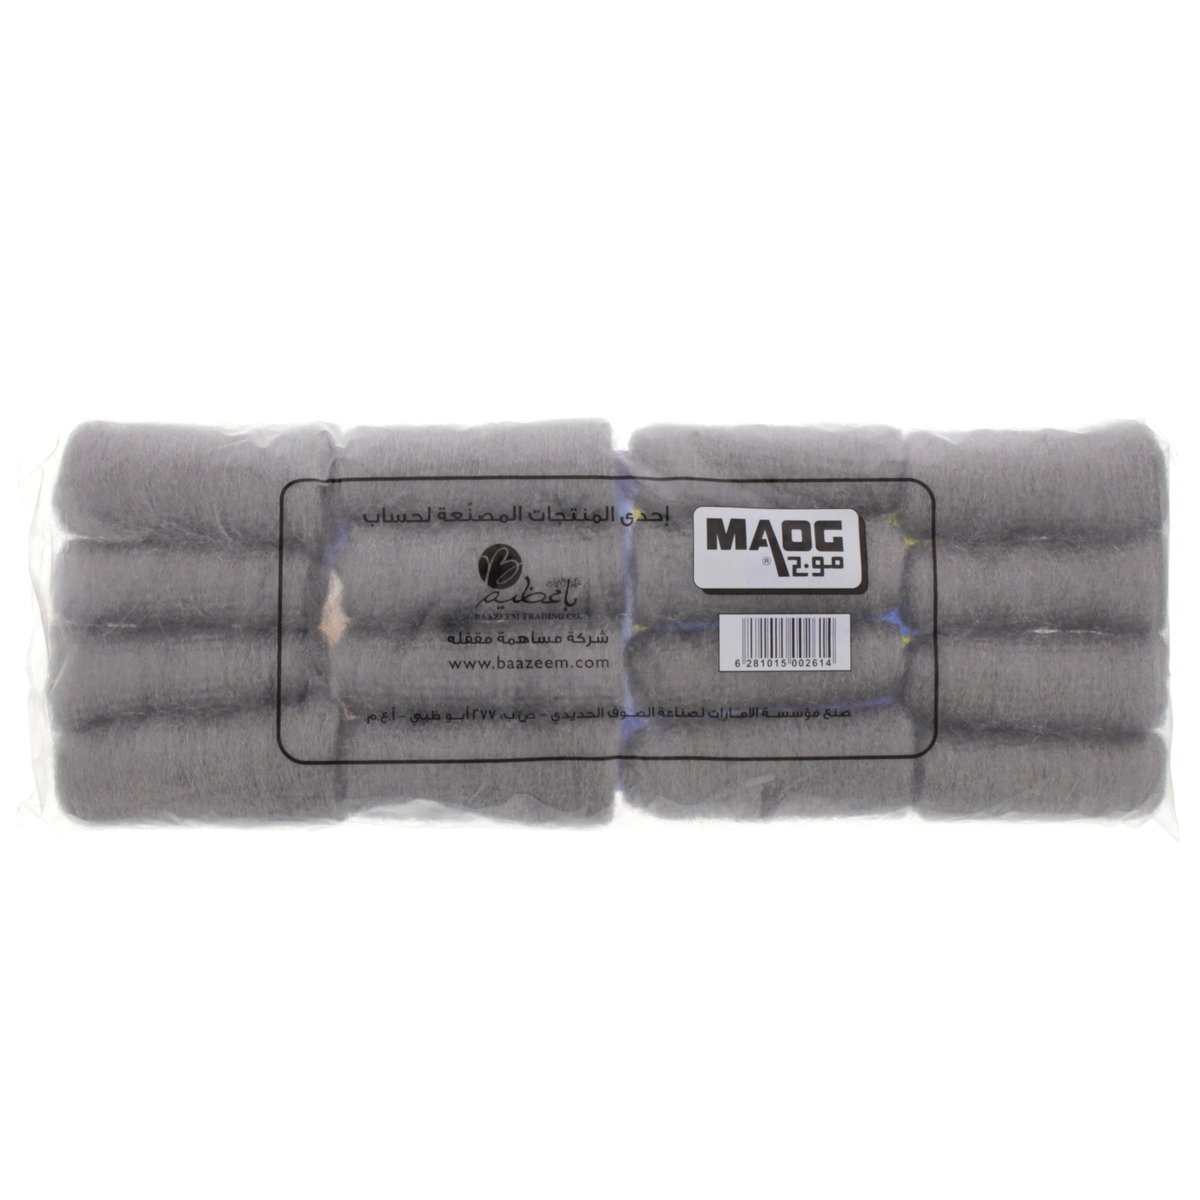 Maog Steel Wool Rolls Jumbo Size 16pcs